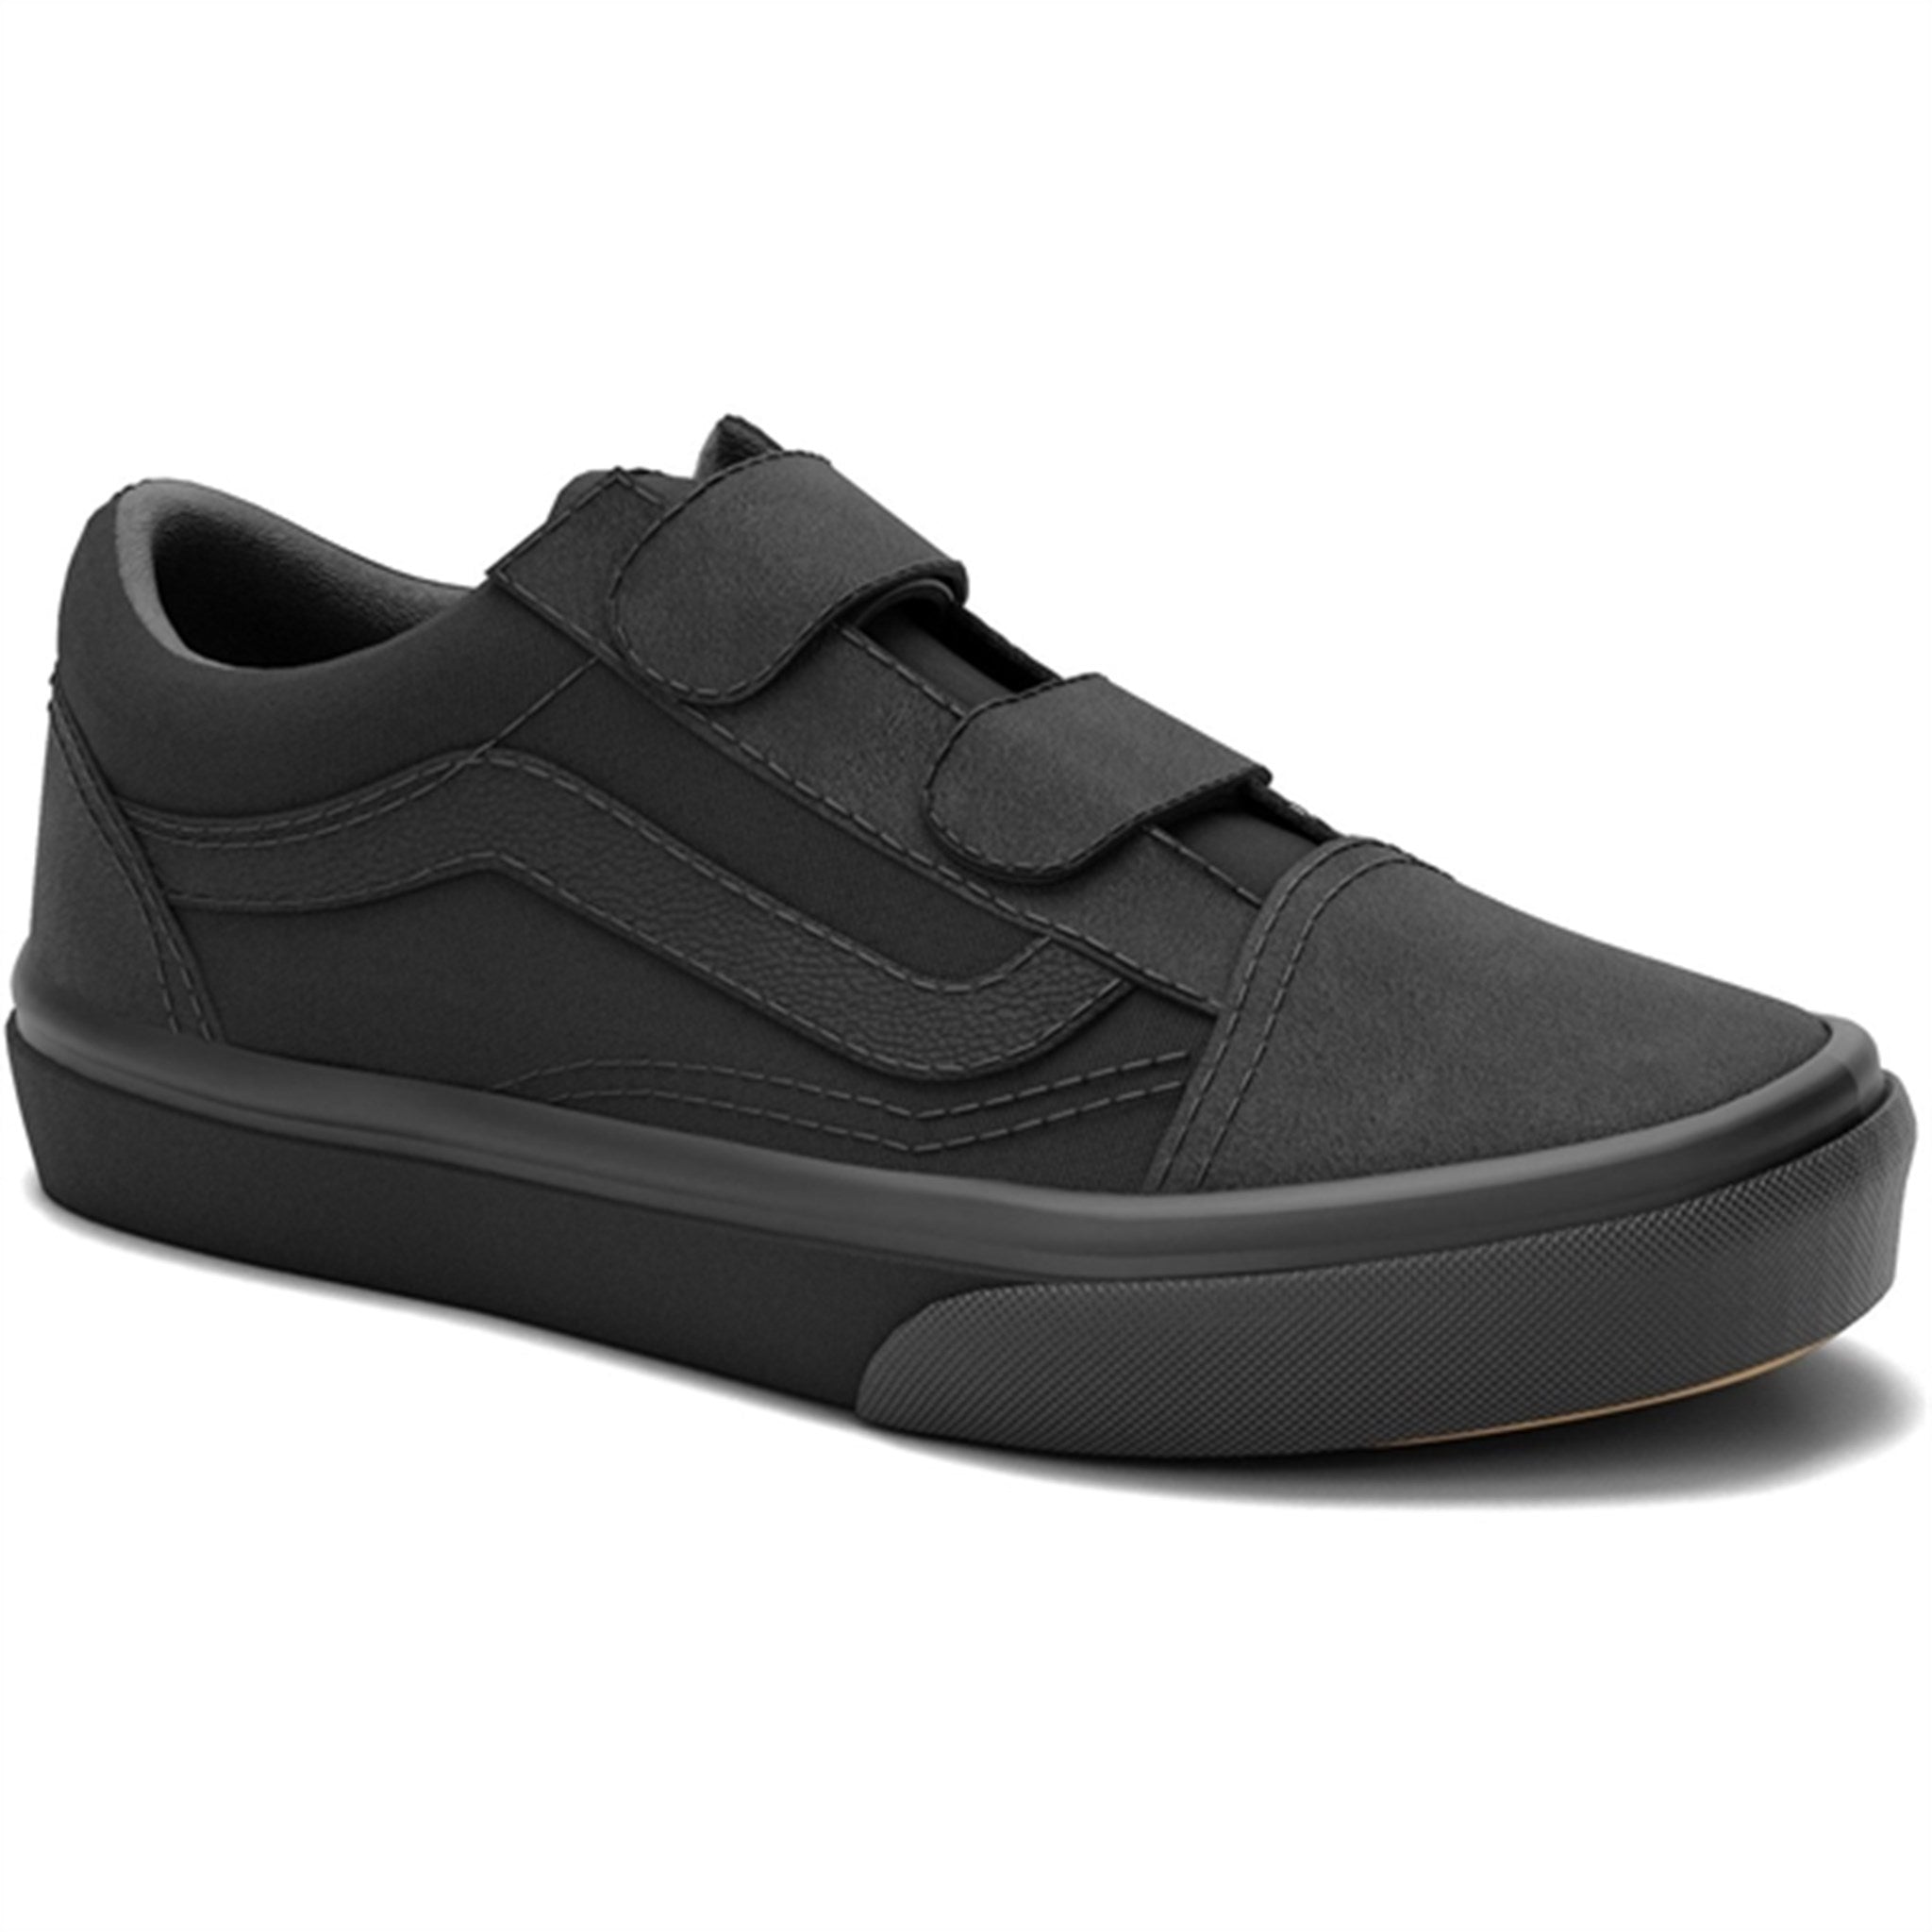 VANS Uy Old Skool V Black/Black Sneakers 3